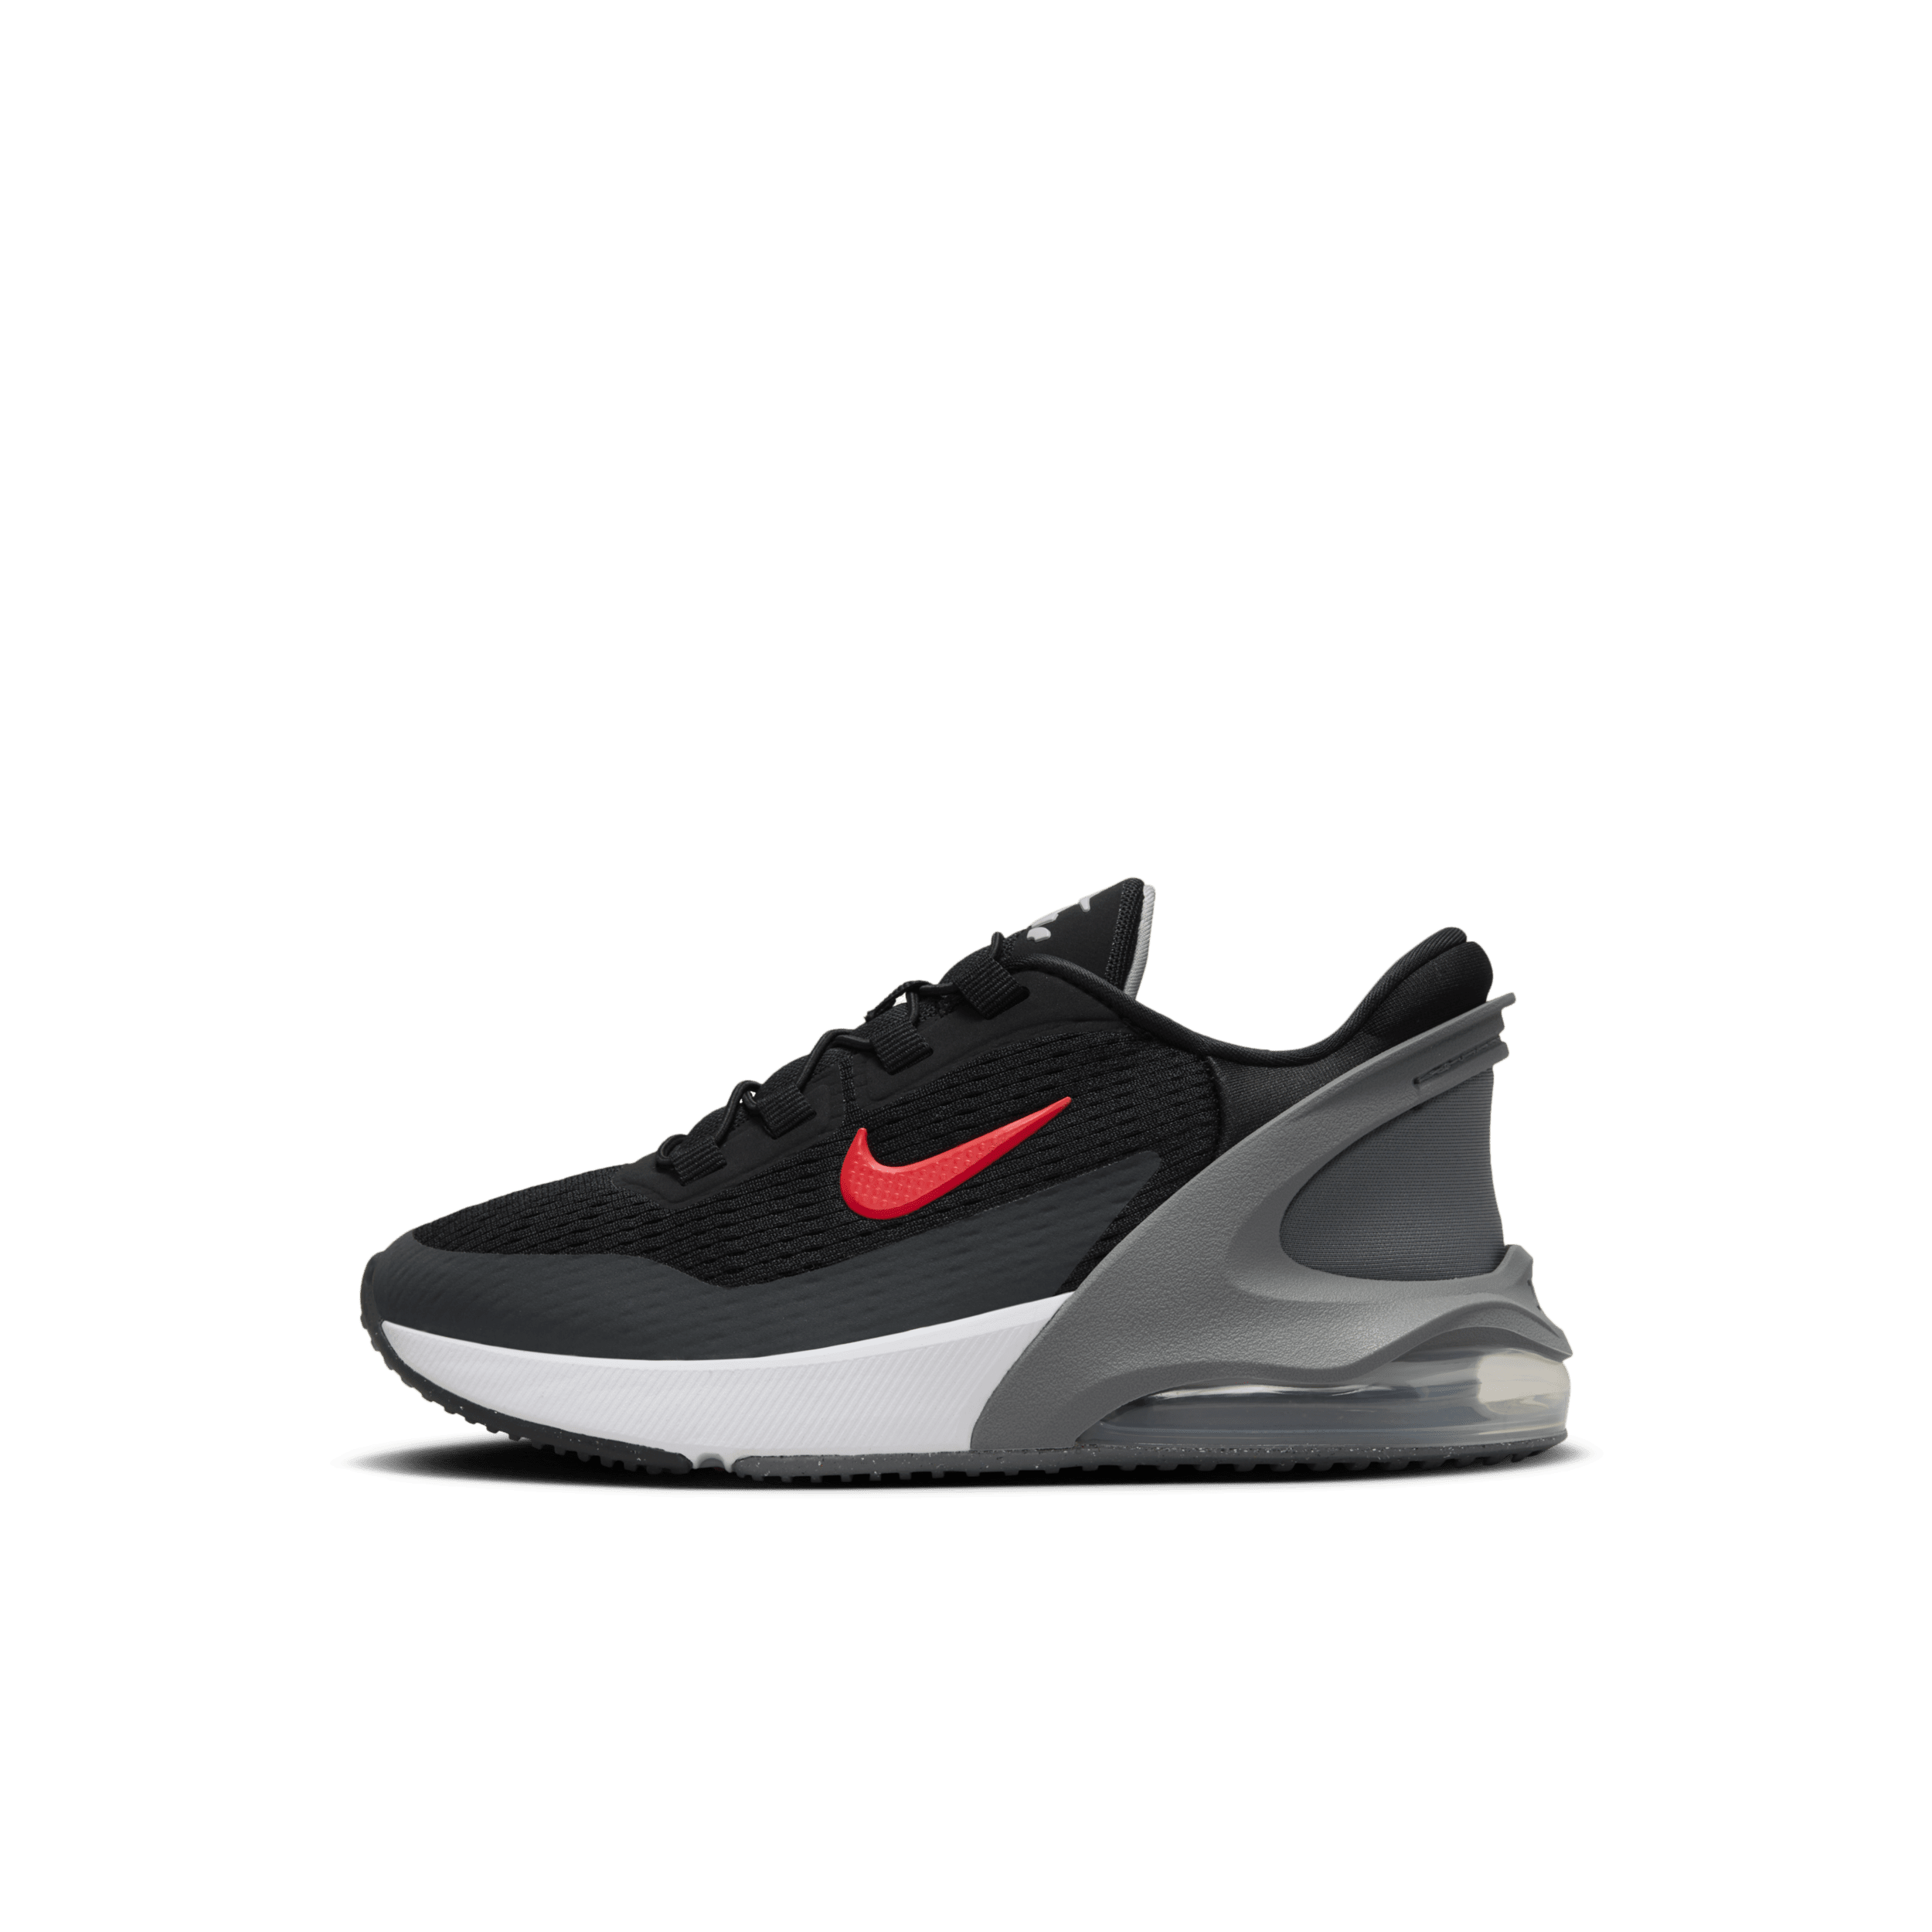 Nike Air Max 270 GO Zapatillas fáciles de poner y quitar - Niño/a pequeño/a - Negro